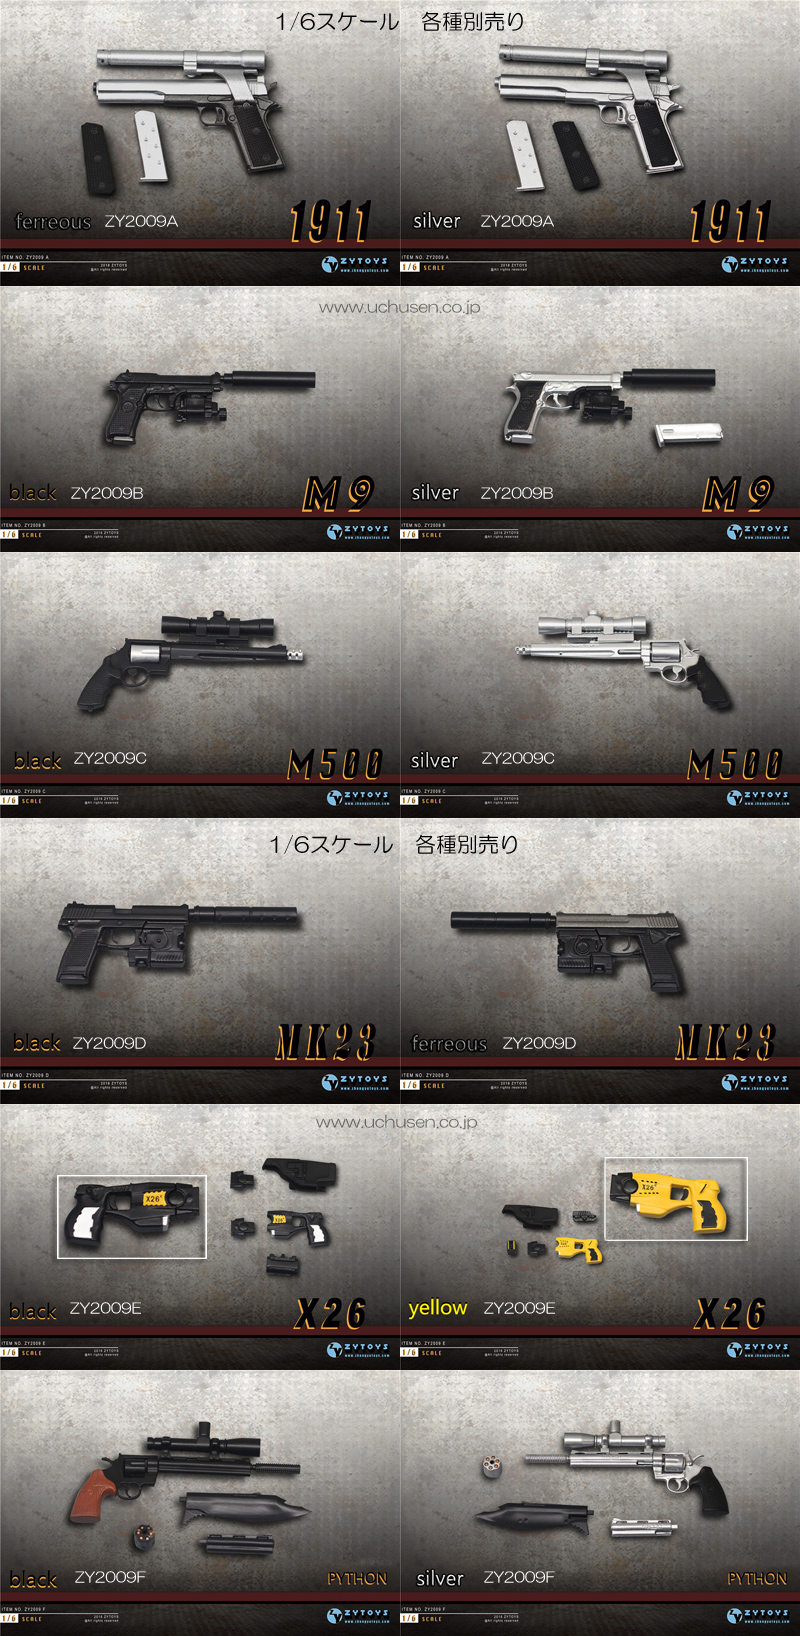 【ZYTOYS】ZY2009 M1911、M9、M500、MK23、X26、Bython 1/6スケール ハンドガン＆テーザー銃